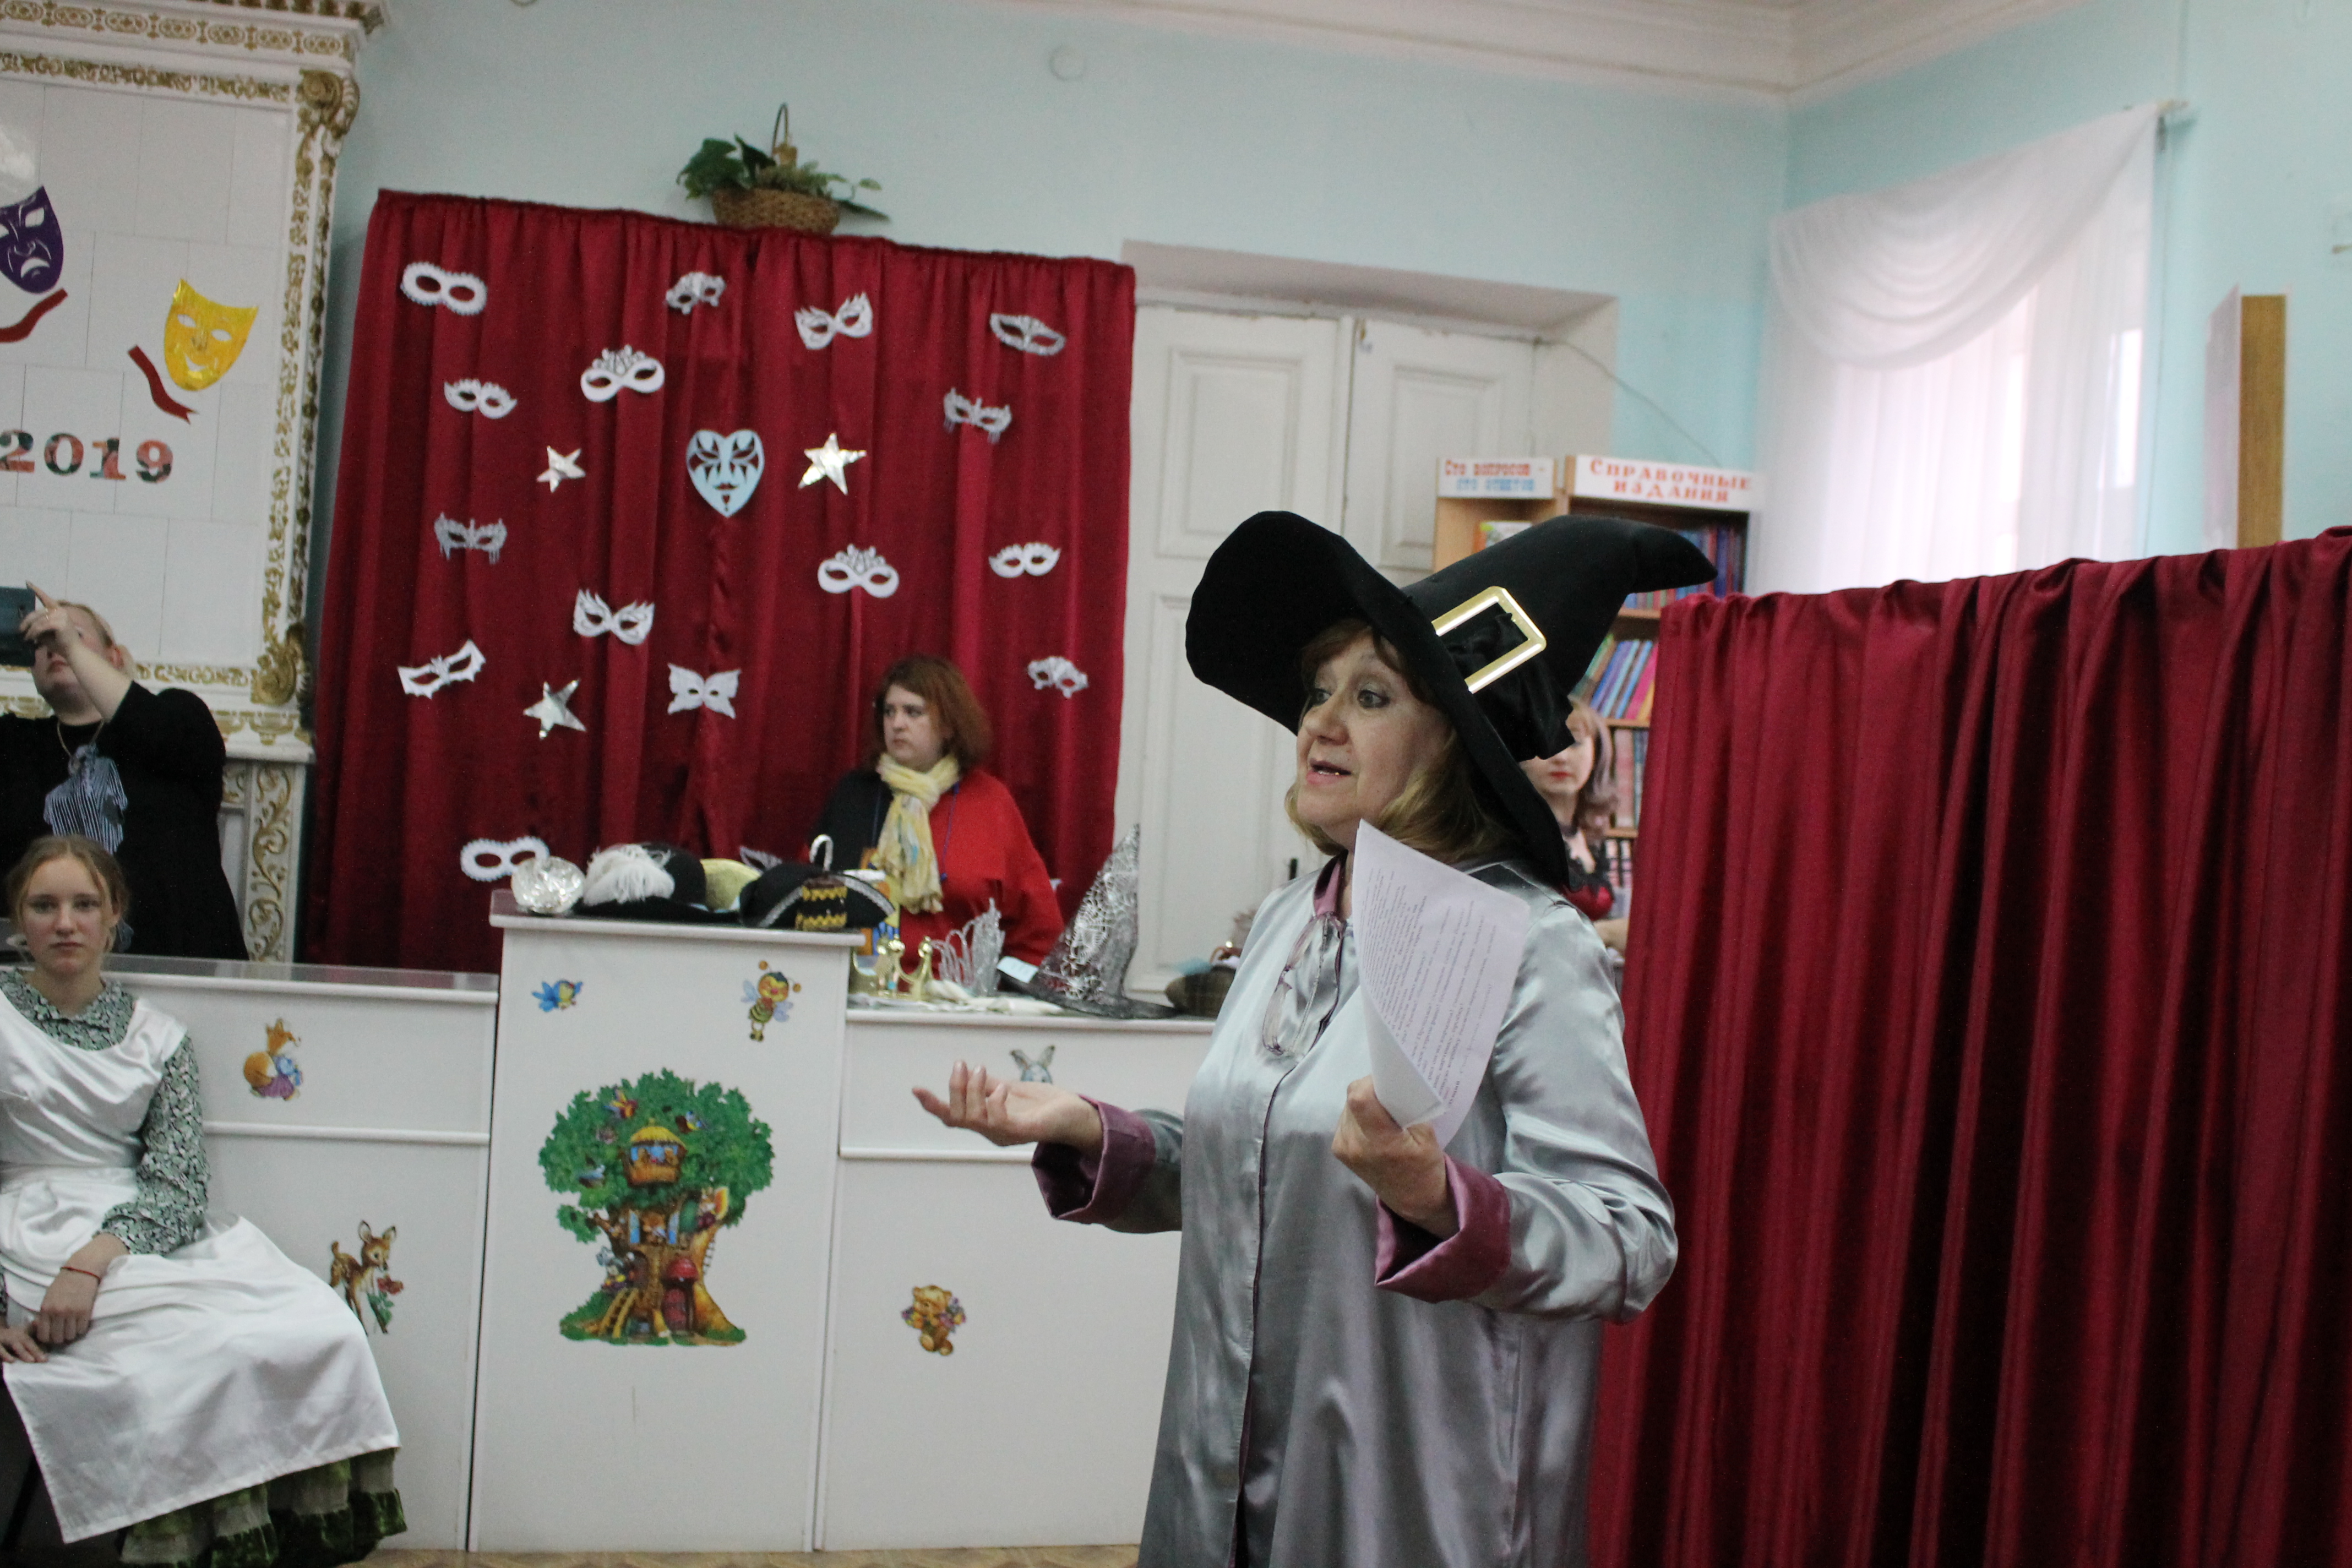 Театральное шоу, аквагрим , кукольный спектакль и эбру – так в Кисловодске прошла библионочь